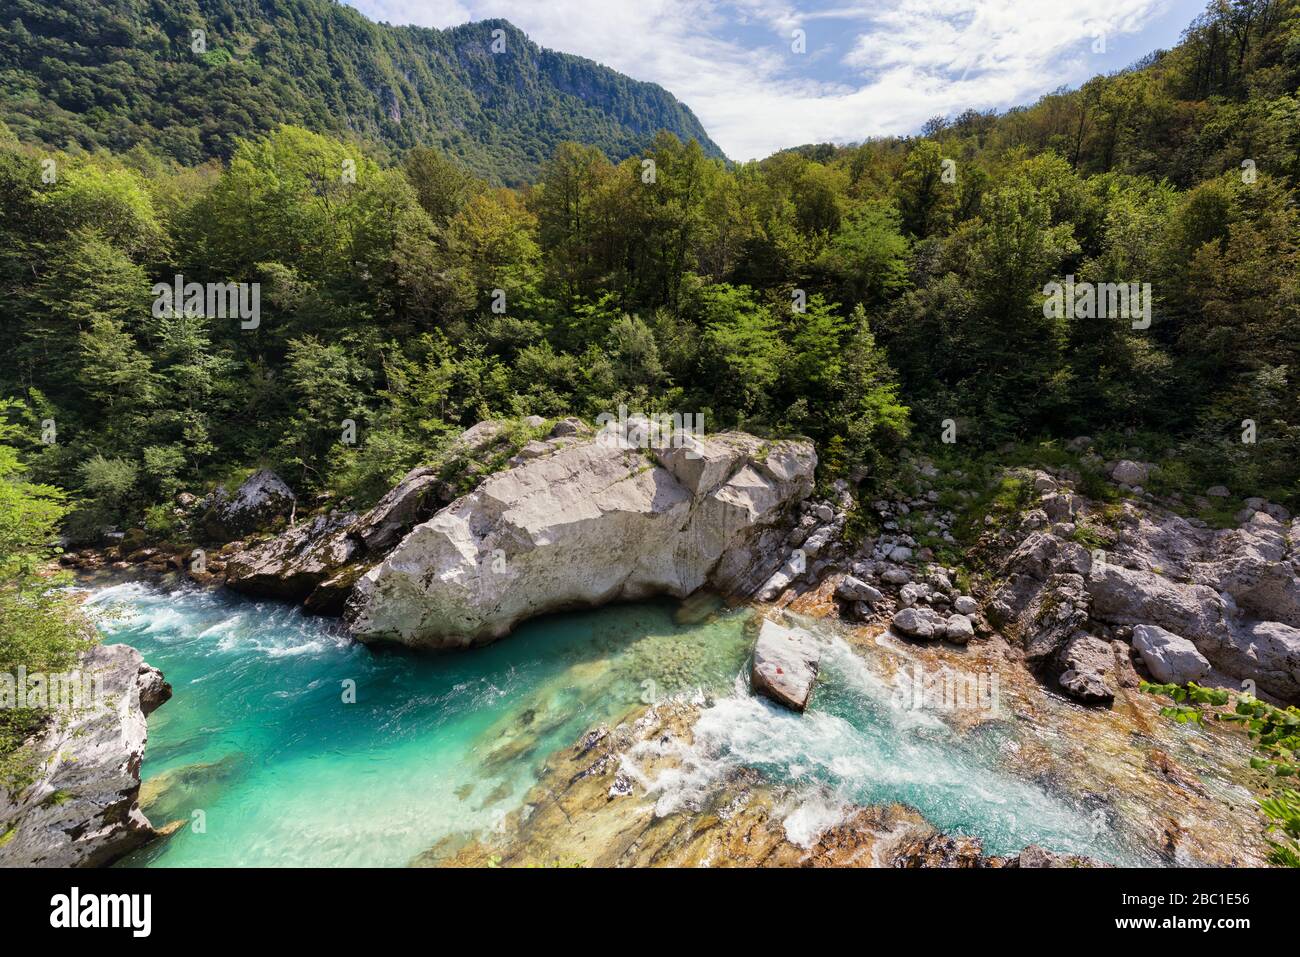 La rivière Emeraude Soča (Isonzo) et les montagnes près de la ville historique de Kobarid (Caporetto). Alpes juliennes, Slovénie. Concept de rivière de montagne. Banque D'Images